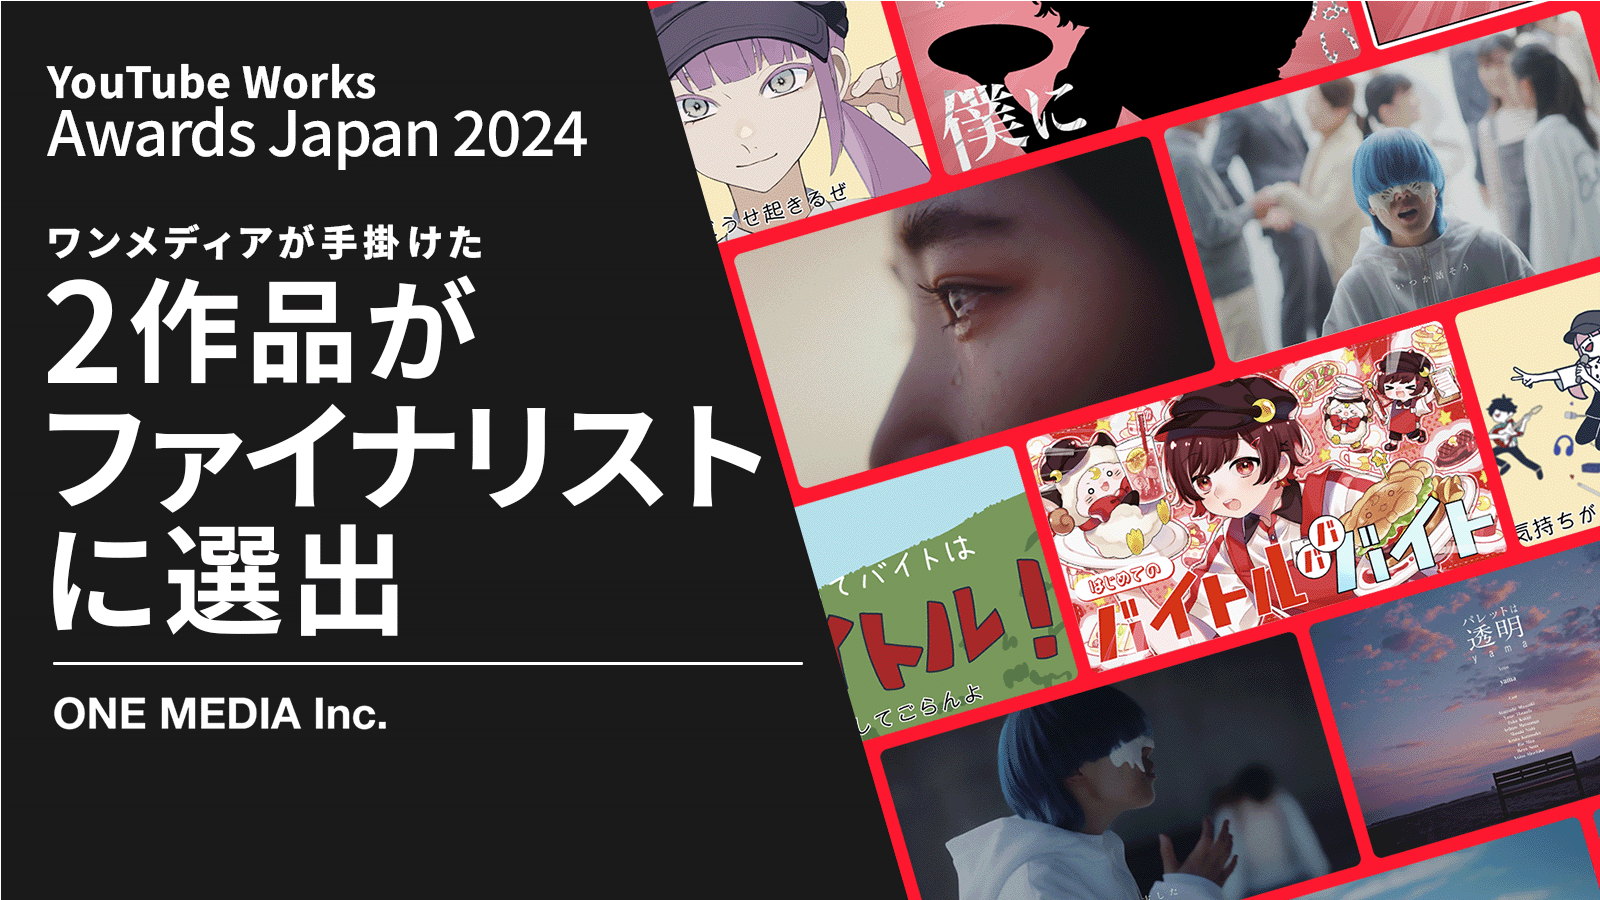 ワンメディアが手掛けたYouTube動画広告2作品が「YouTube Works Awards Japan 2024」ファイナリストに選出の画像